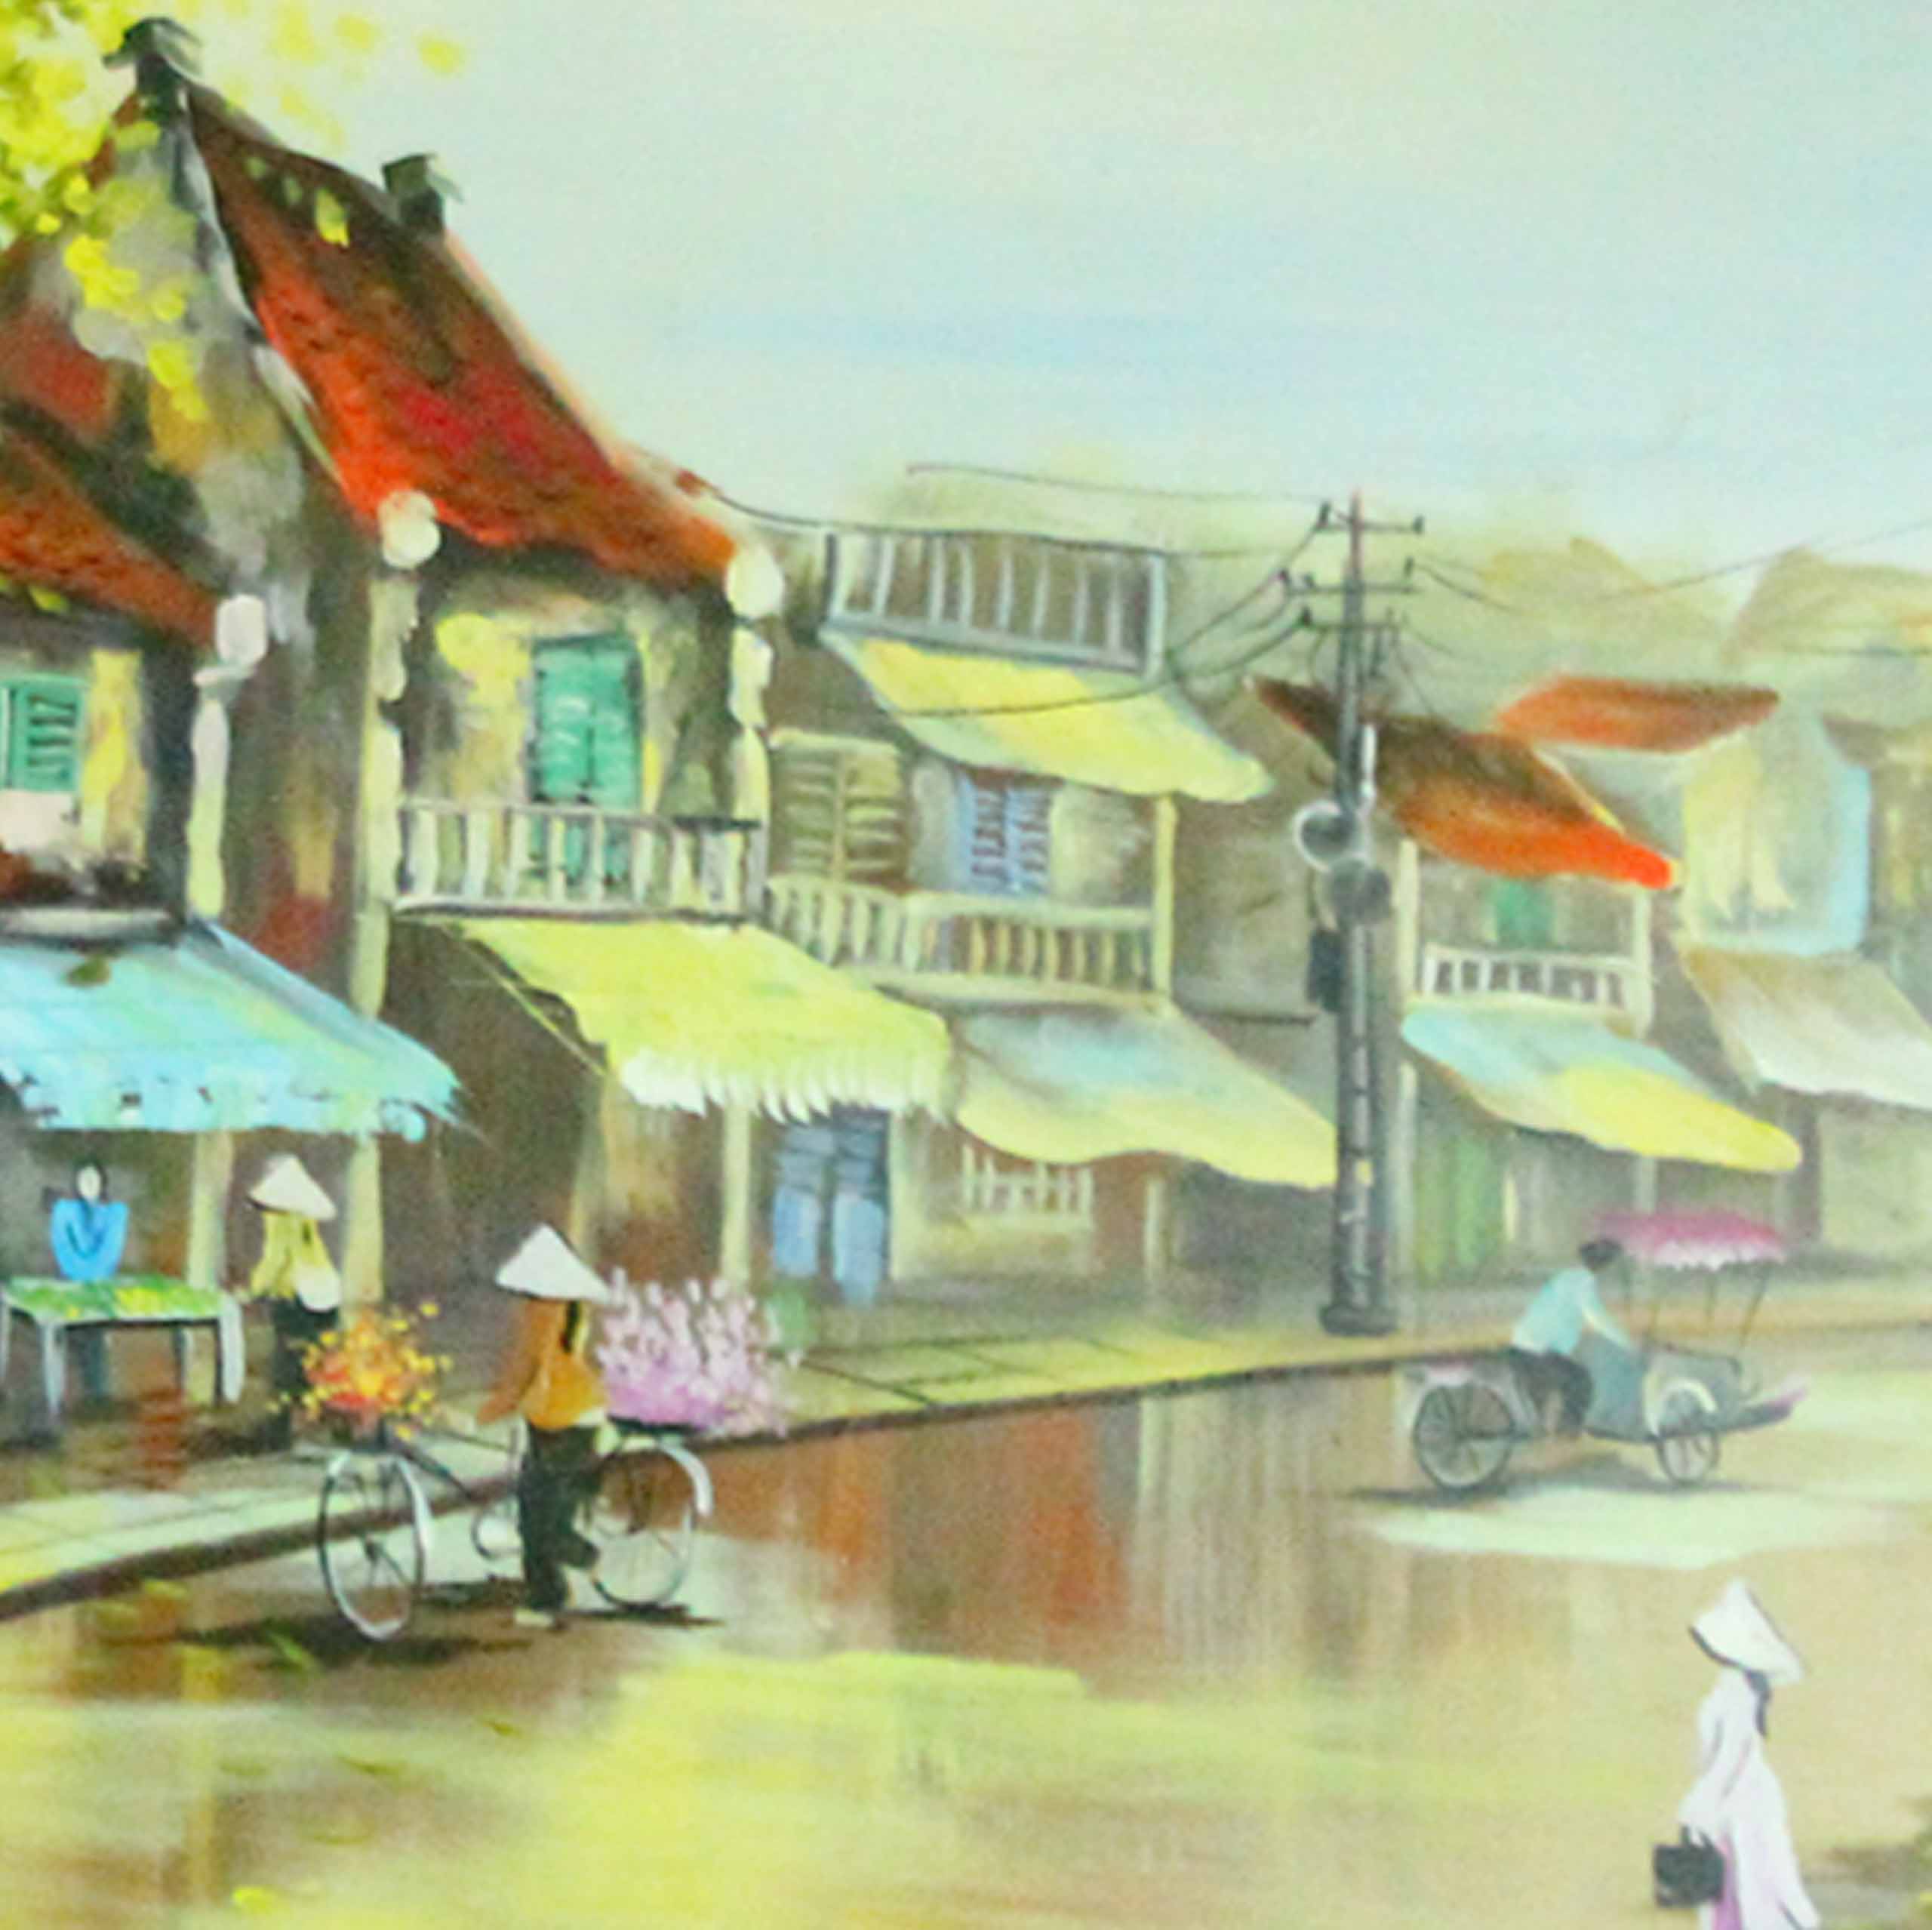 Old town oil painting: Buổi sáng tĩnh lặng trong một khu phố cổ, bức tranh sơn dầu này đã tạo ra một không gian lãng mạn và bình yên. Màu sắc cổ điển và kỹ thuật vẽ tinh tế của họa sĩ đã giúp tái hiện lại cảm giác của người xưa.